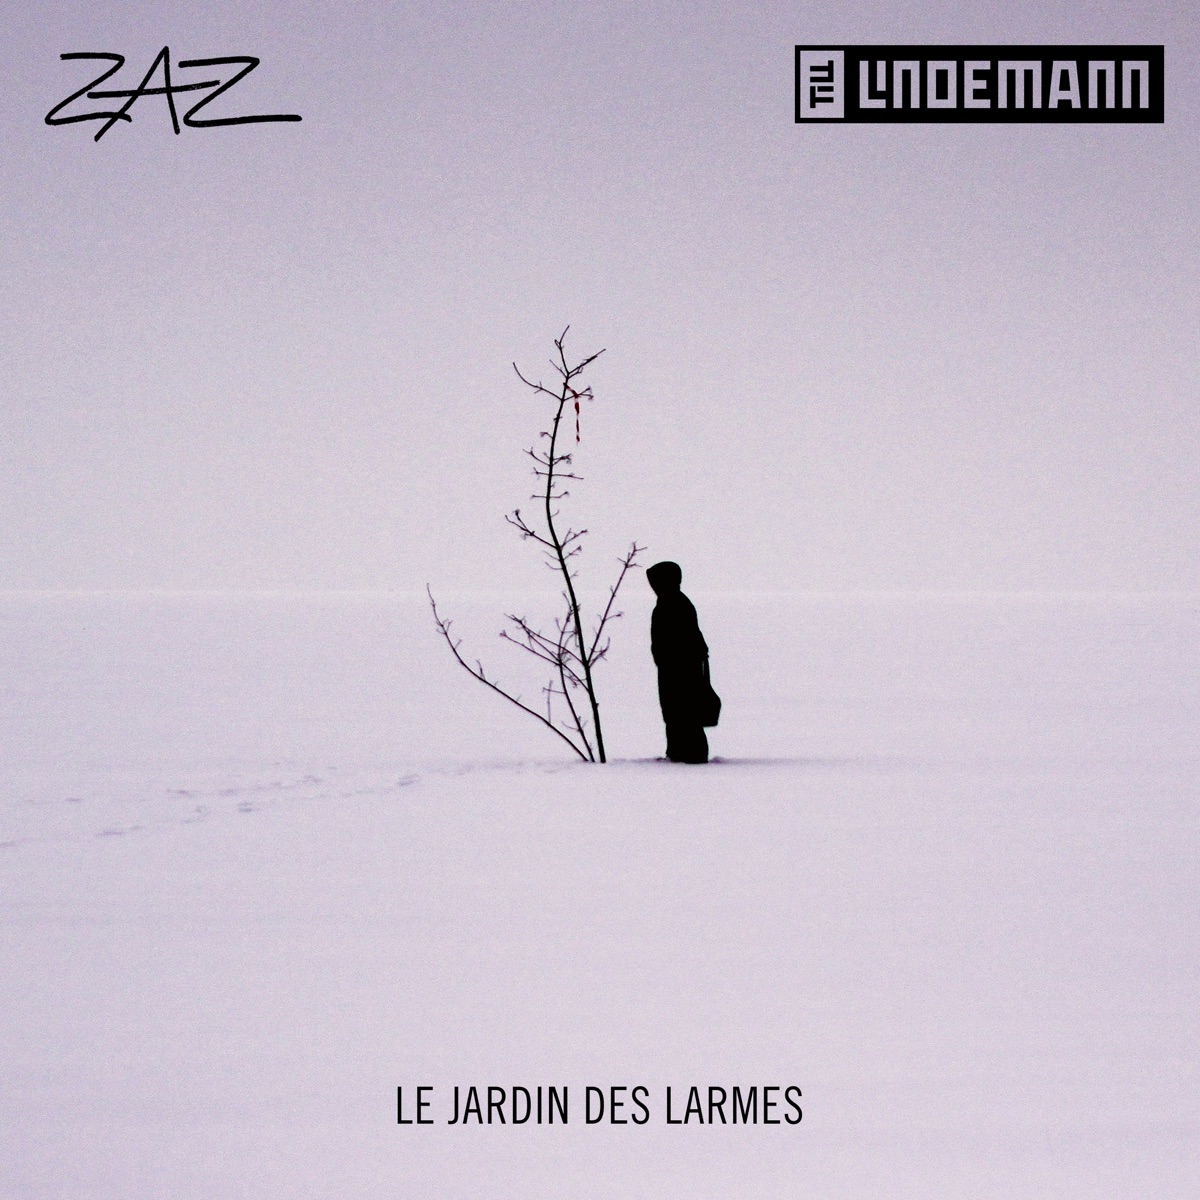 Zaz featuring Till Lindemann — Le jardin des larmes cover artwork